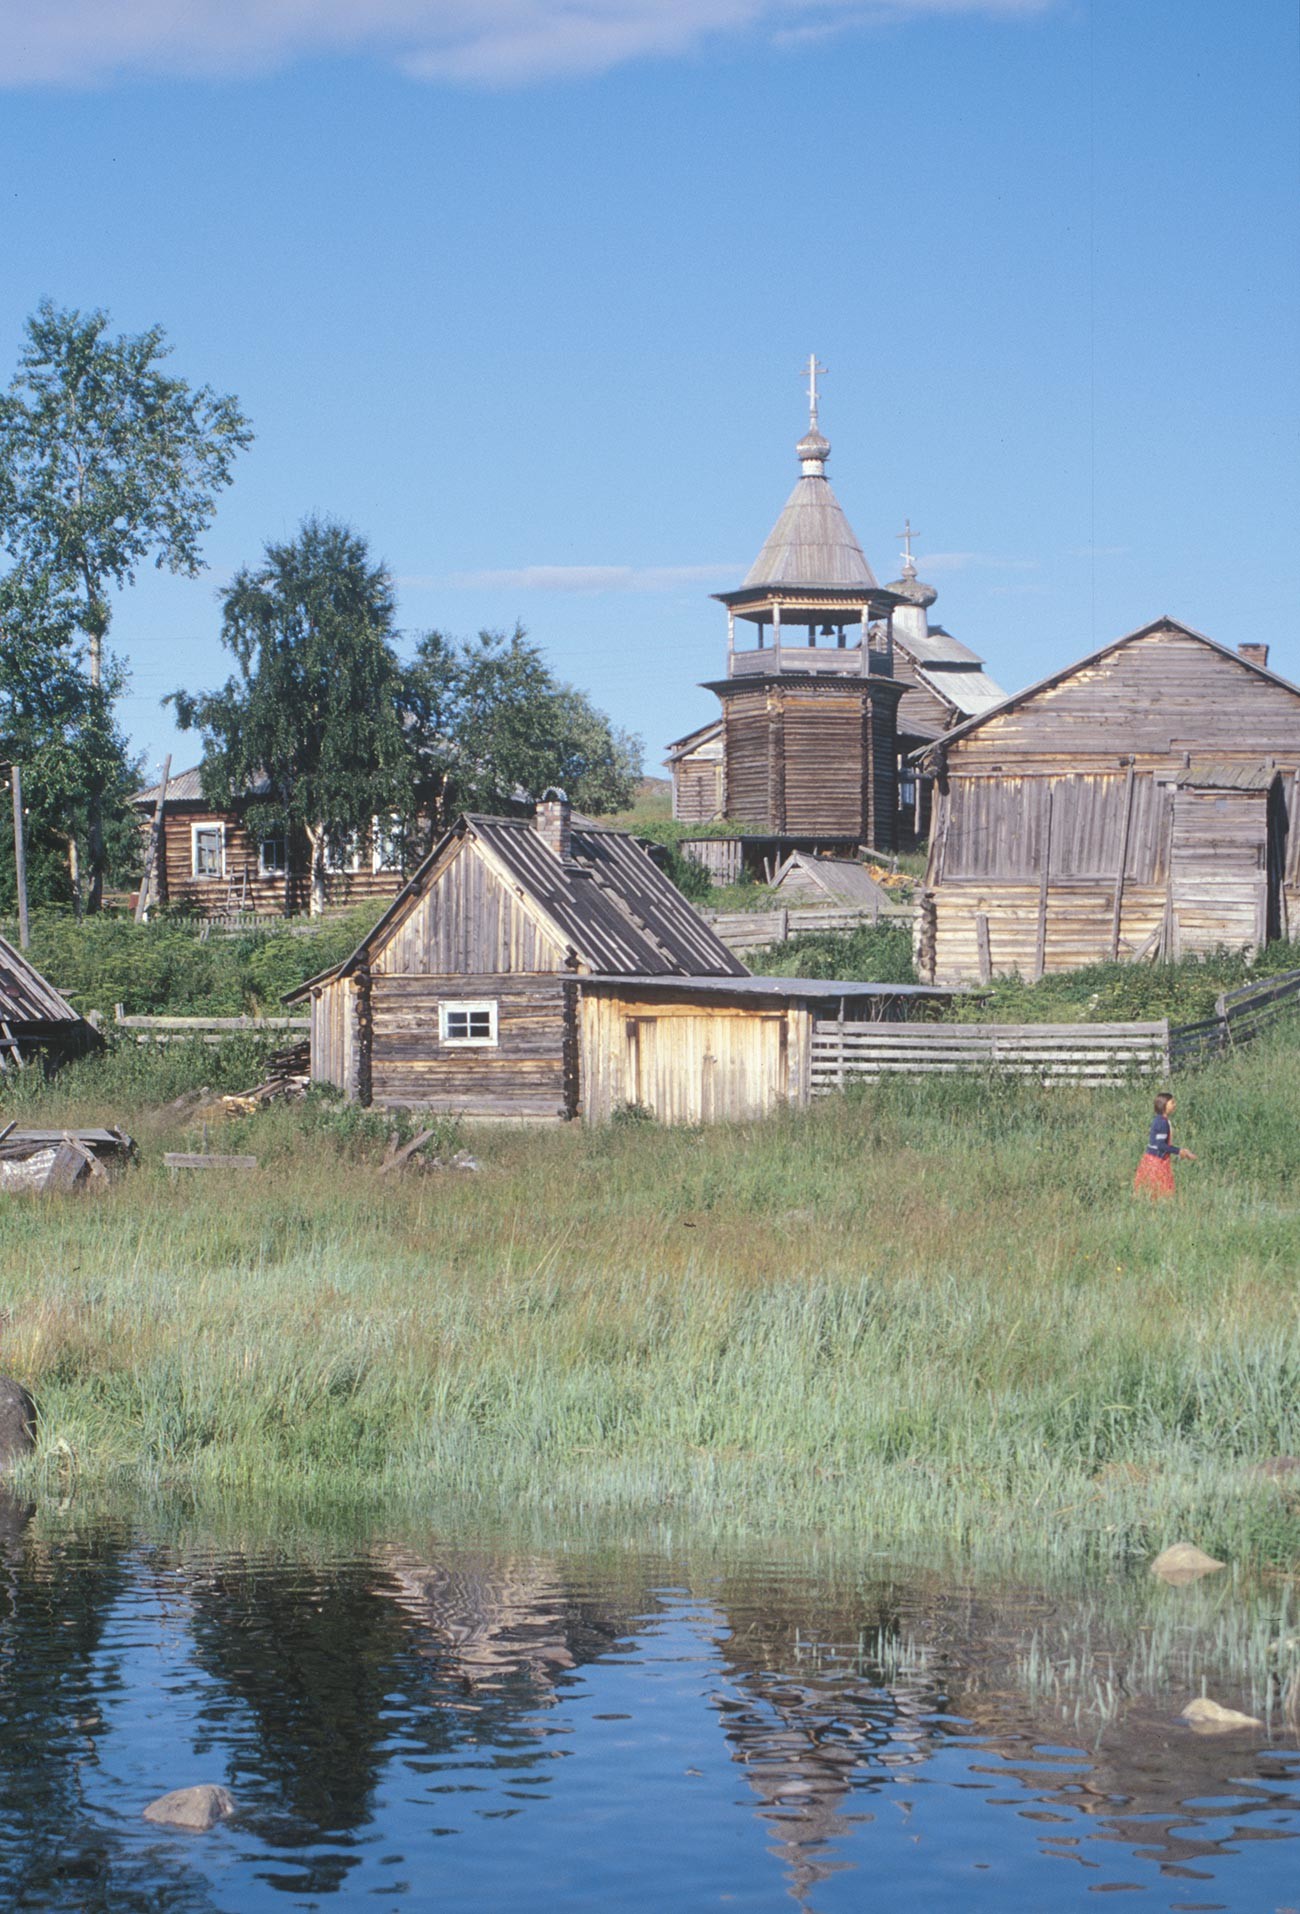 コヴダ村。丸太小屋と蒸し風呂と納屋。背景は聖ニコライ教会と鐘楼。2001年7月24日。